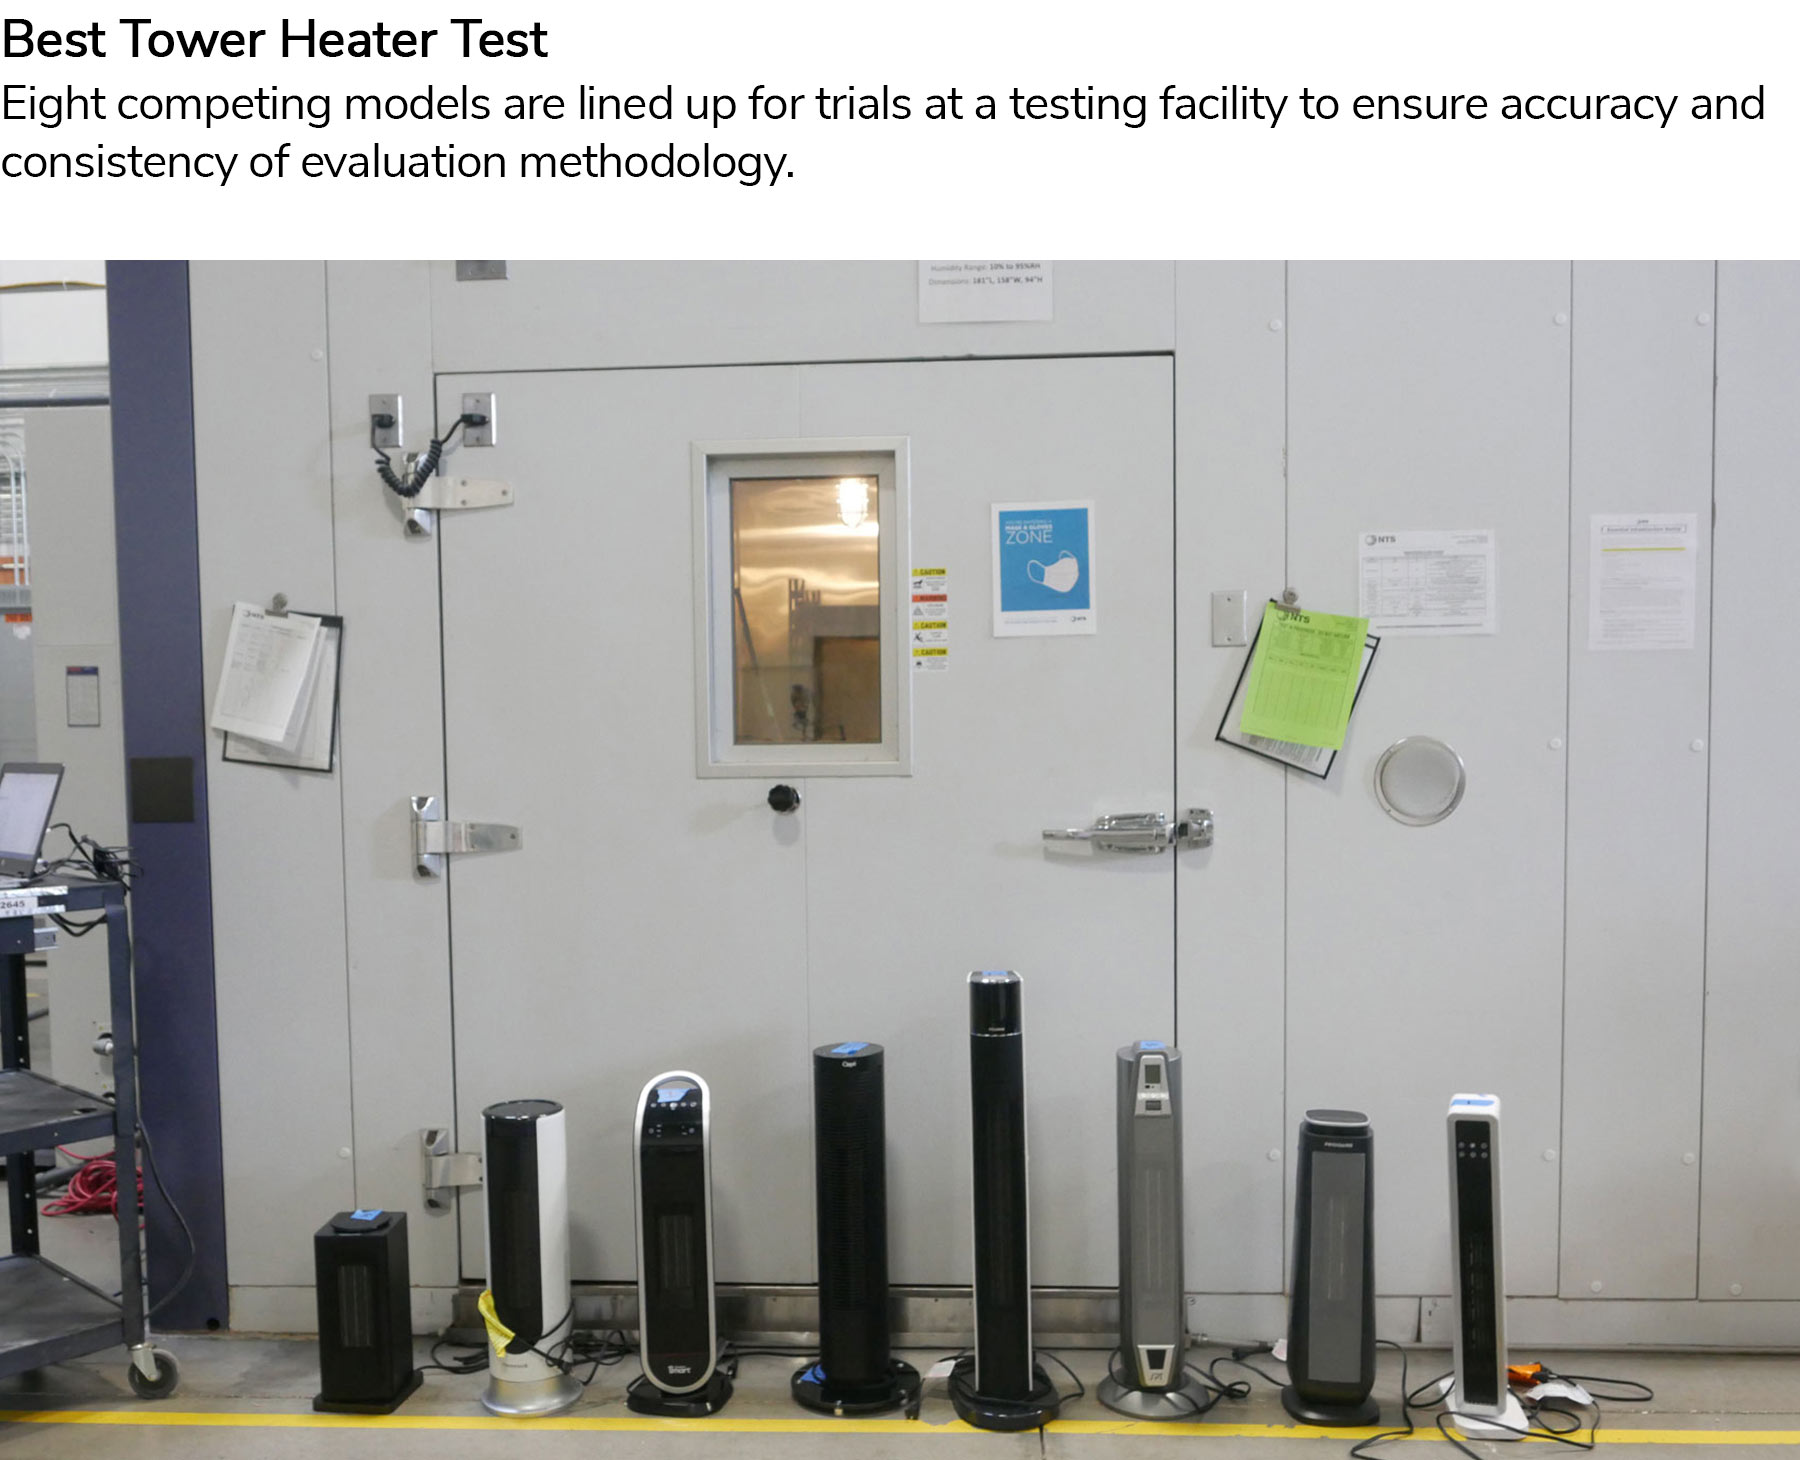 Best Tower Heater Test